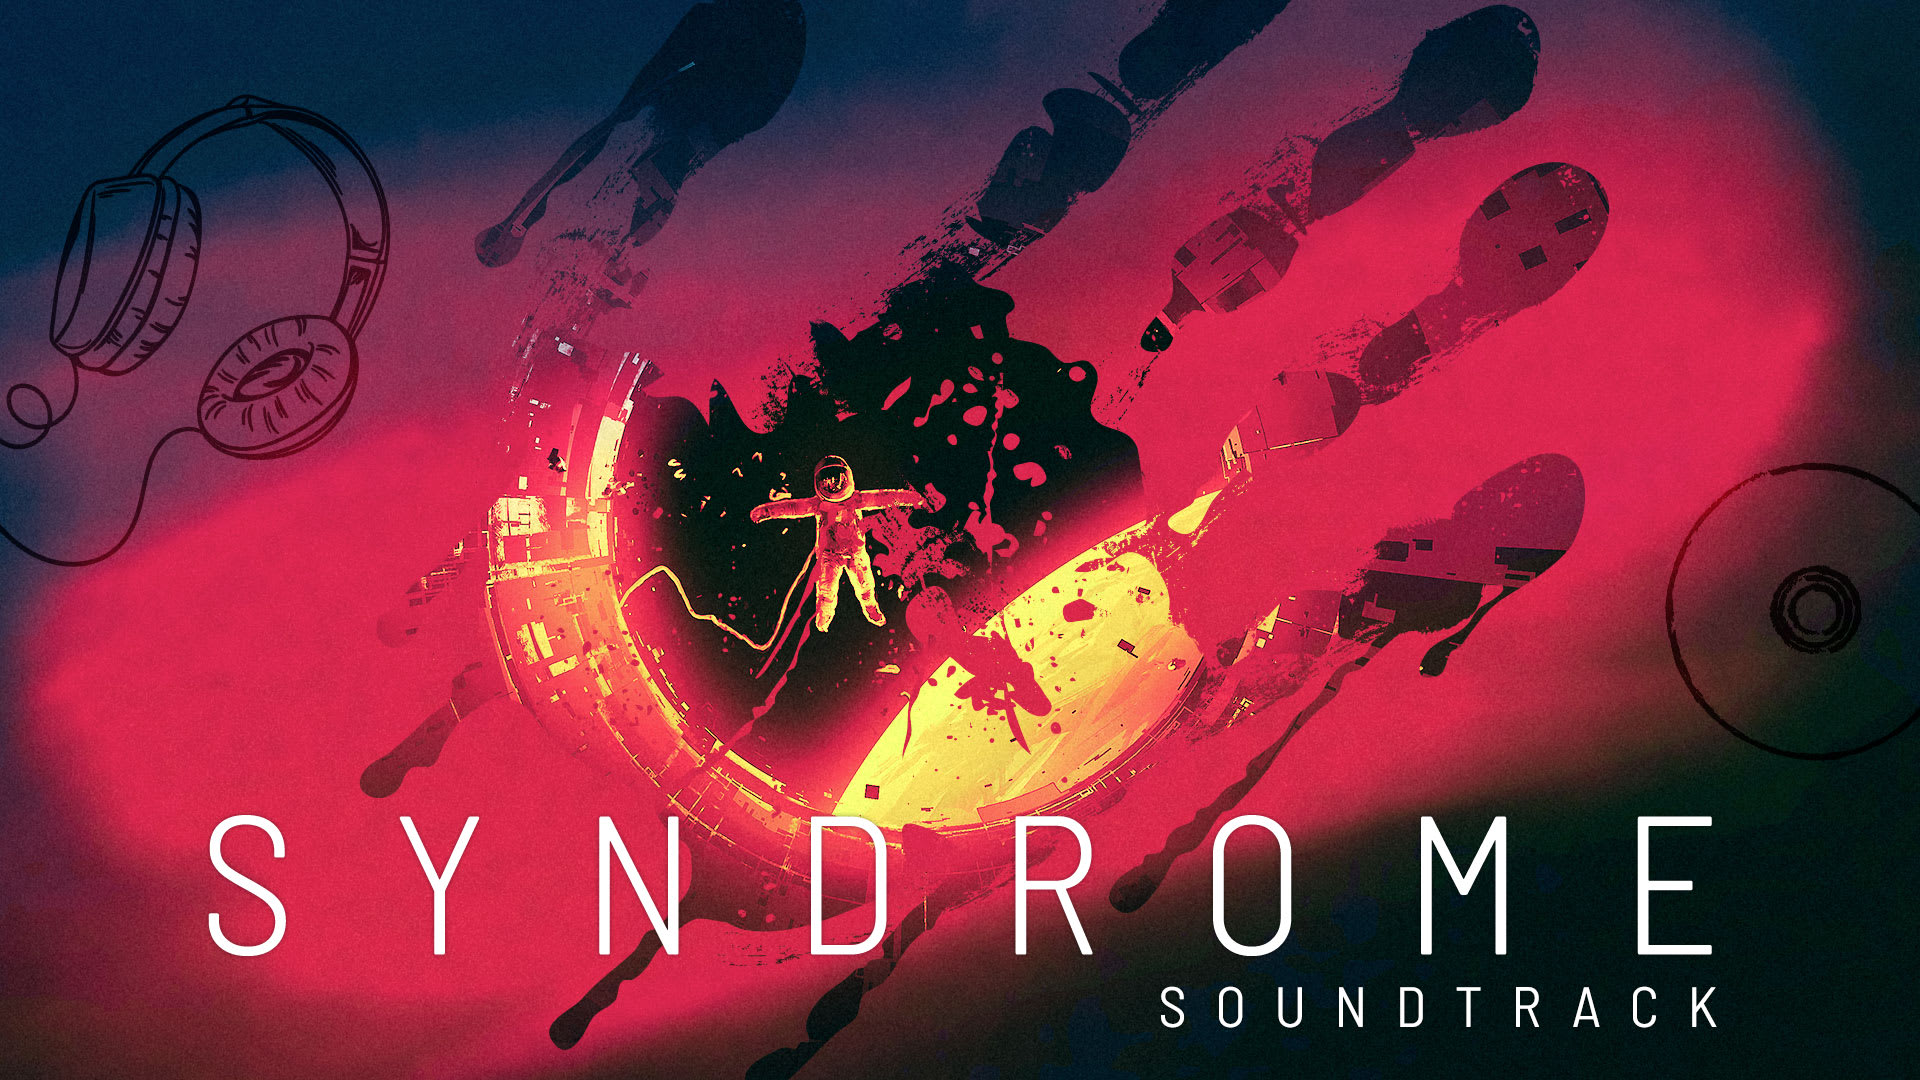 Syndrome Soundtrack